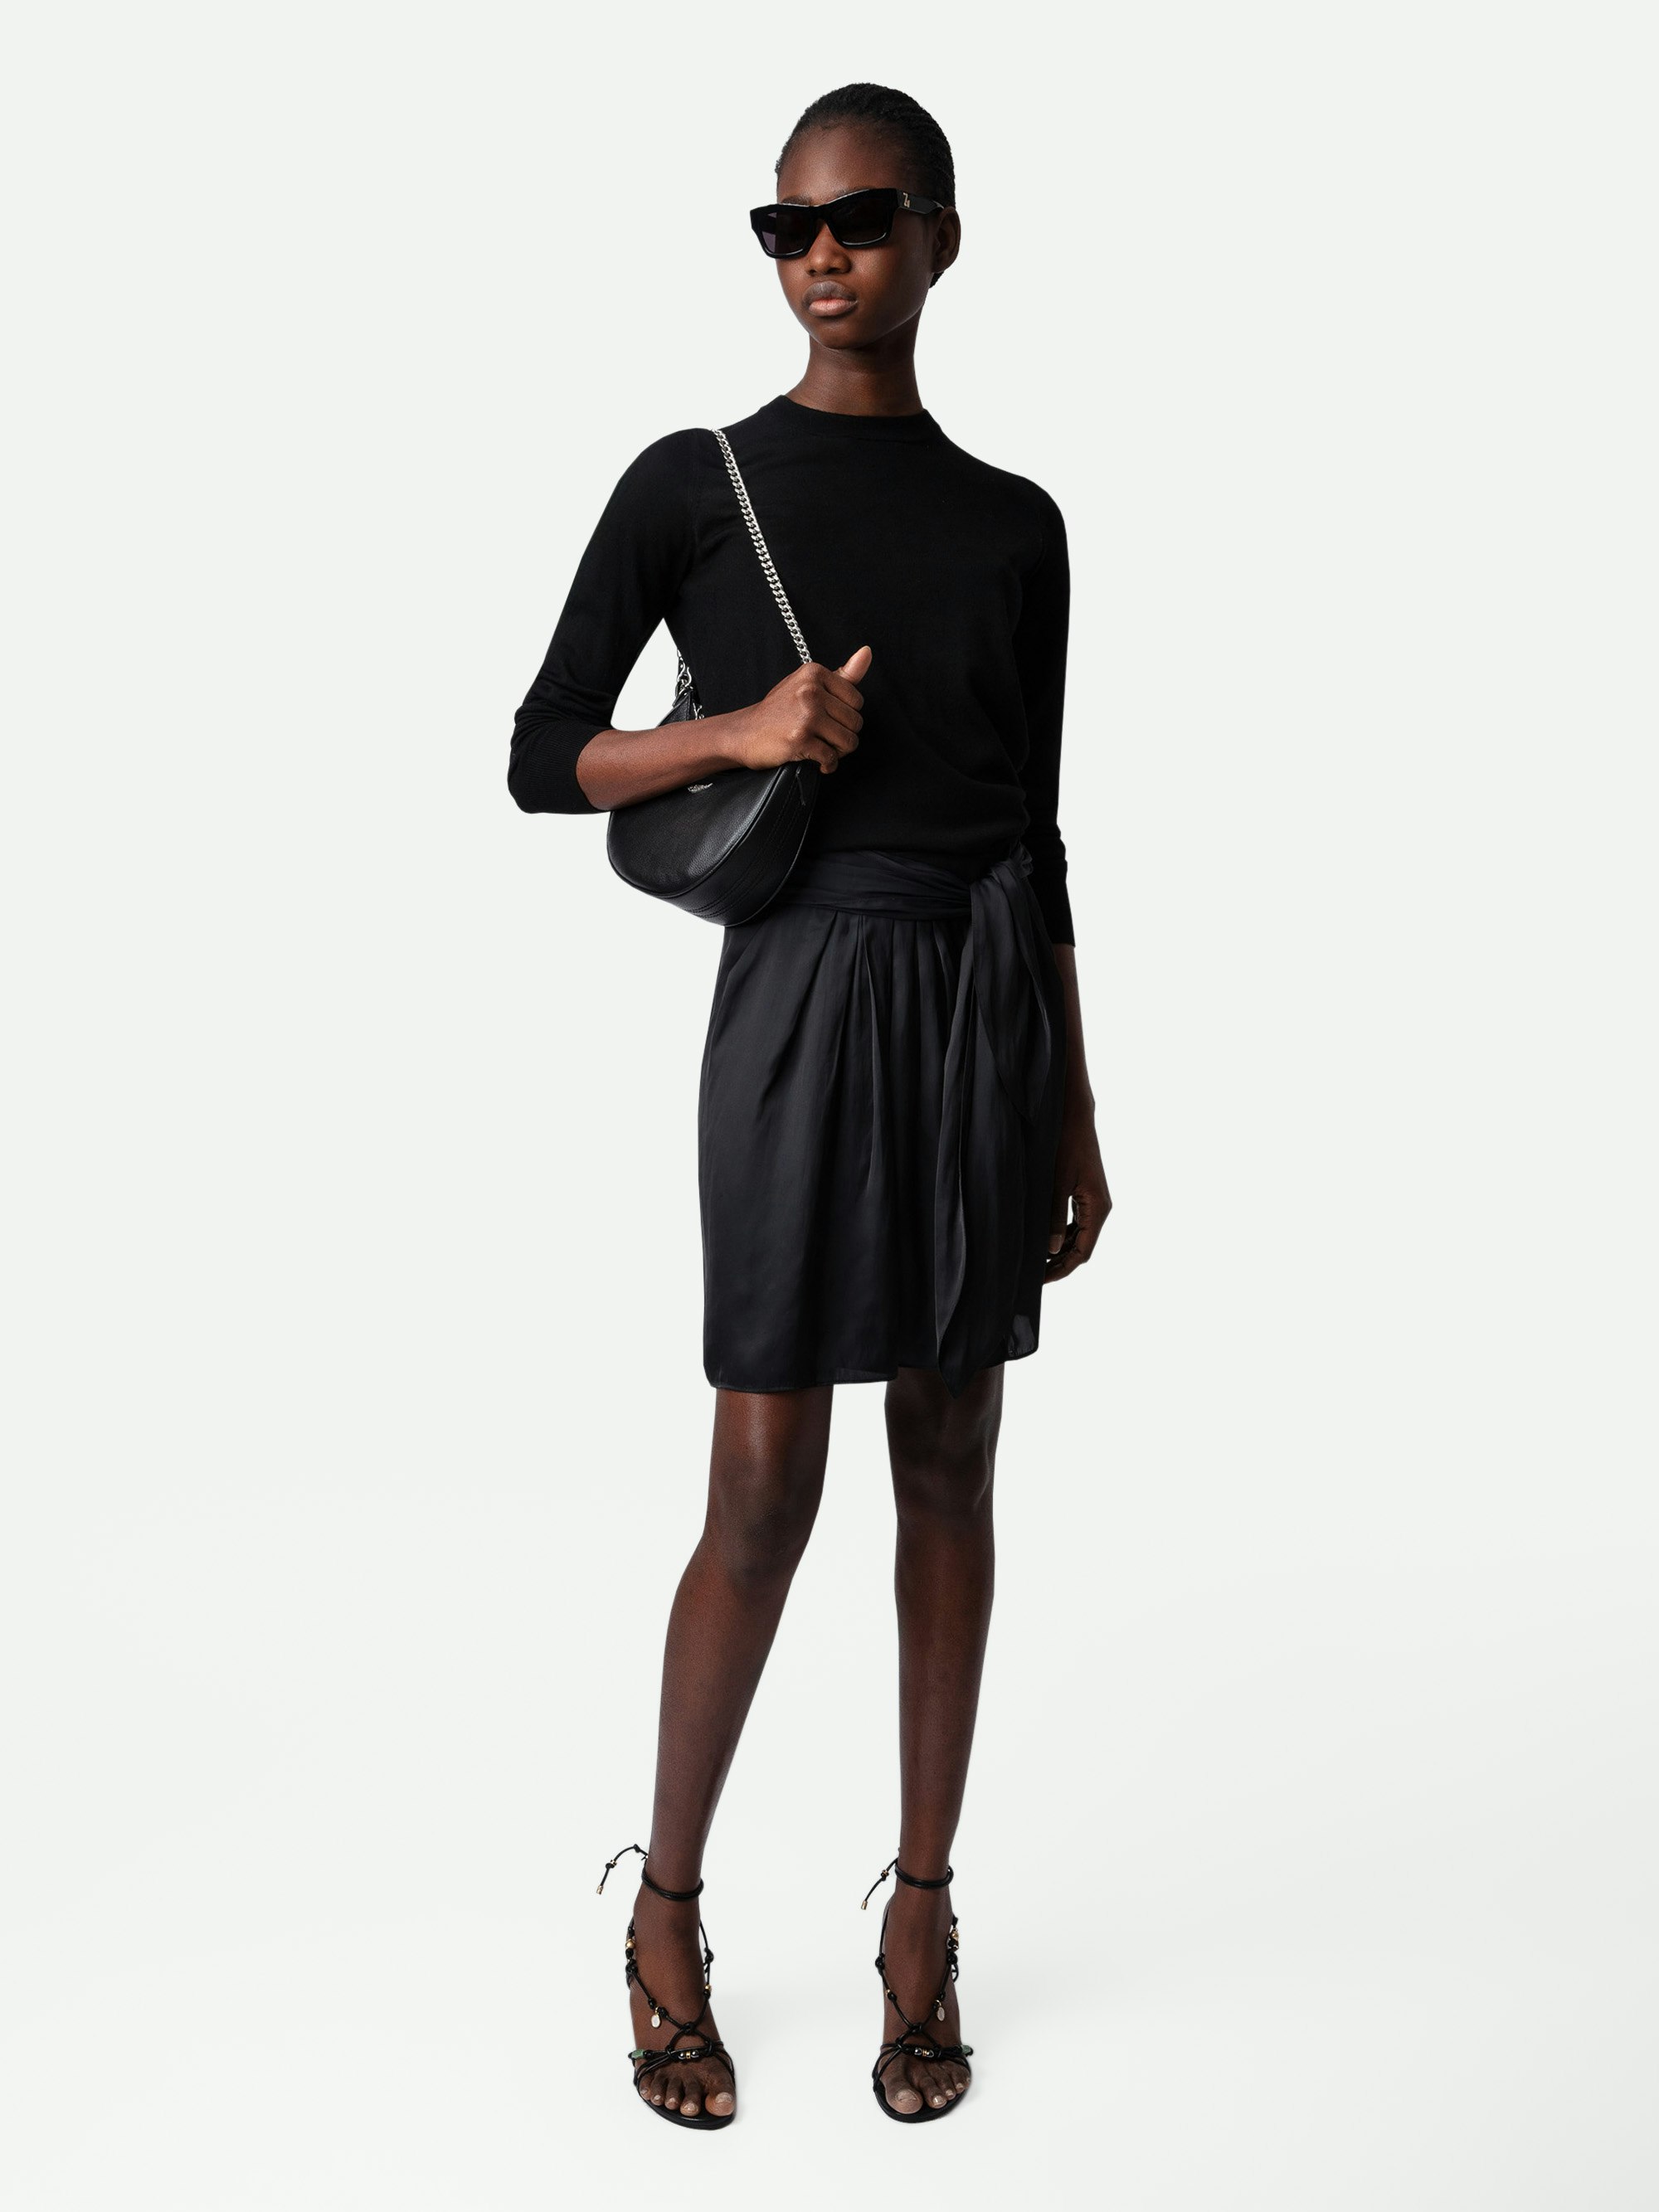 Joji Satin Skirt - Black satin miniskirt with pleats, split and tie at the waist.